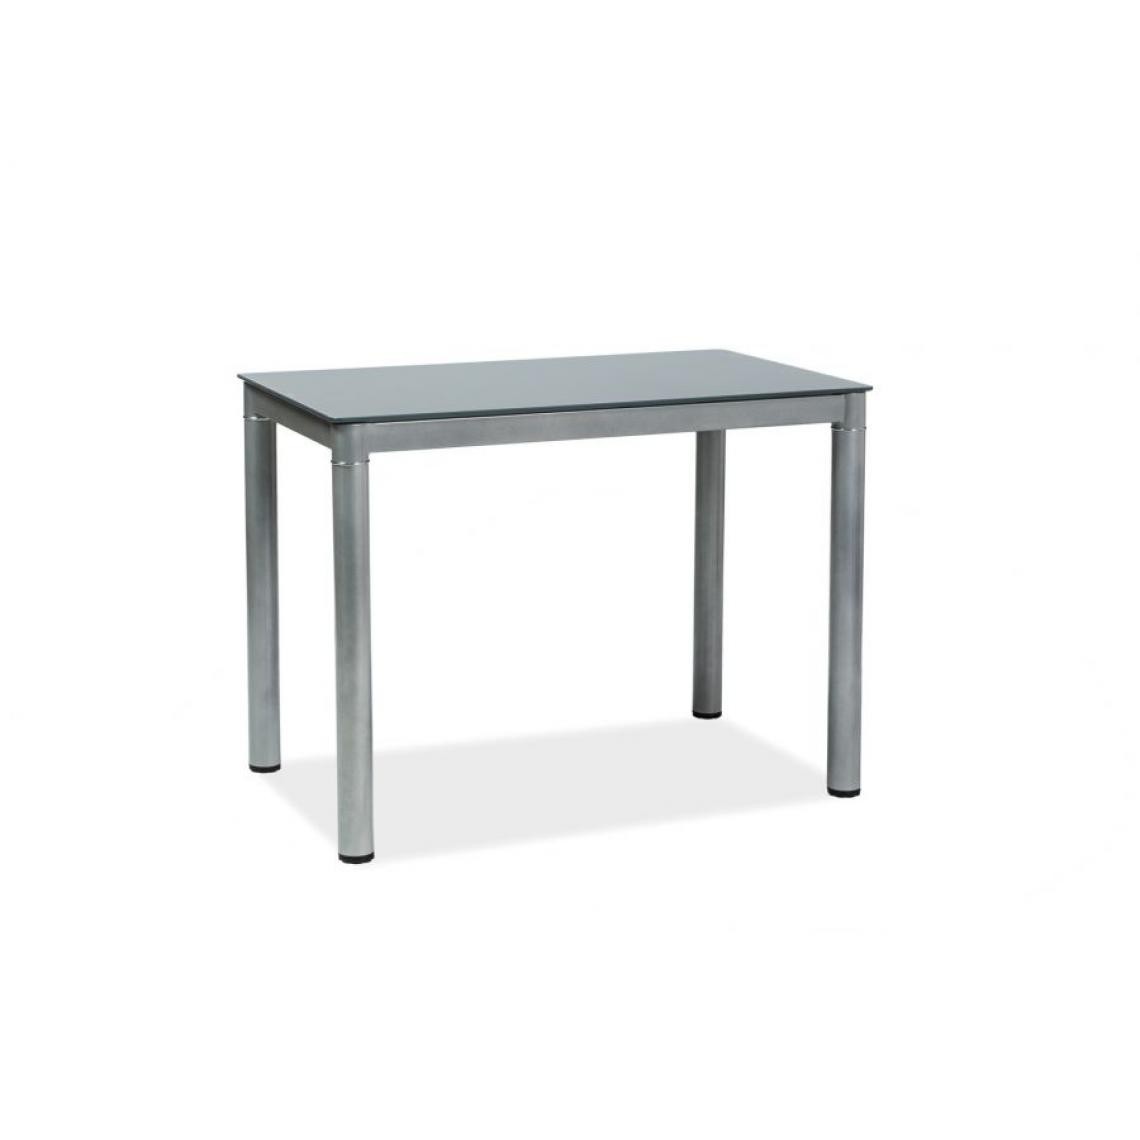 Hucoco - GARANT - Table moderne pour salle à manger salon - 100x60x75 cm - Plateau en verre - Pieds en métal - Gris - Tables à manger